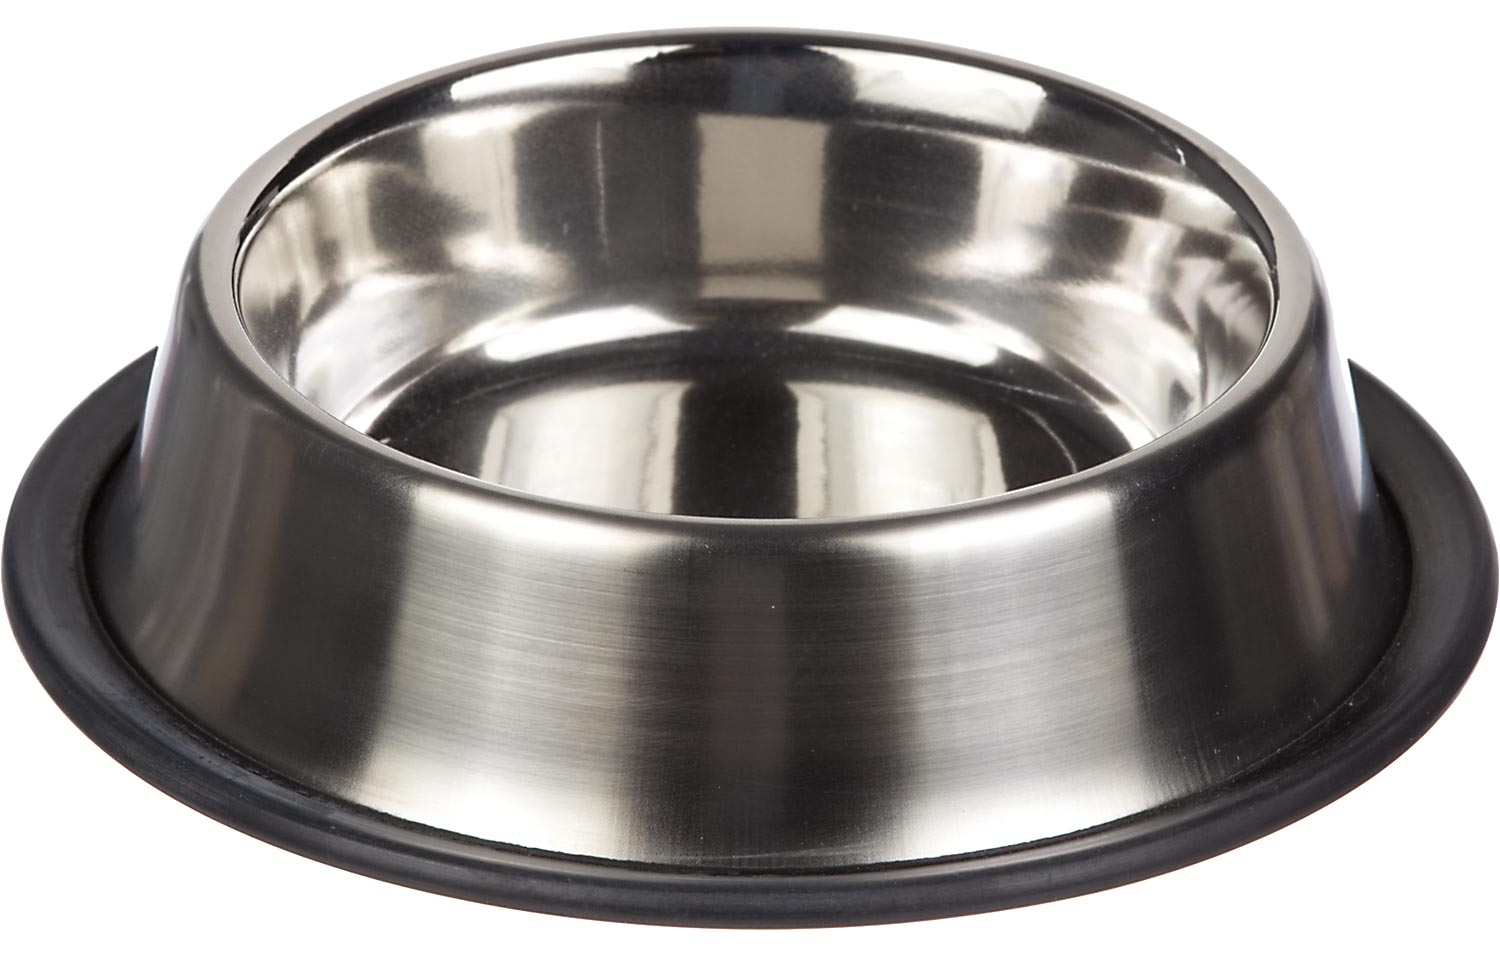 metal dog bowls